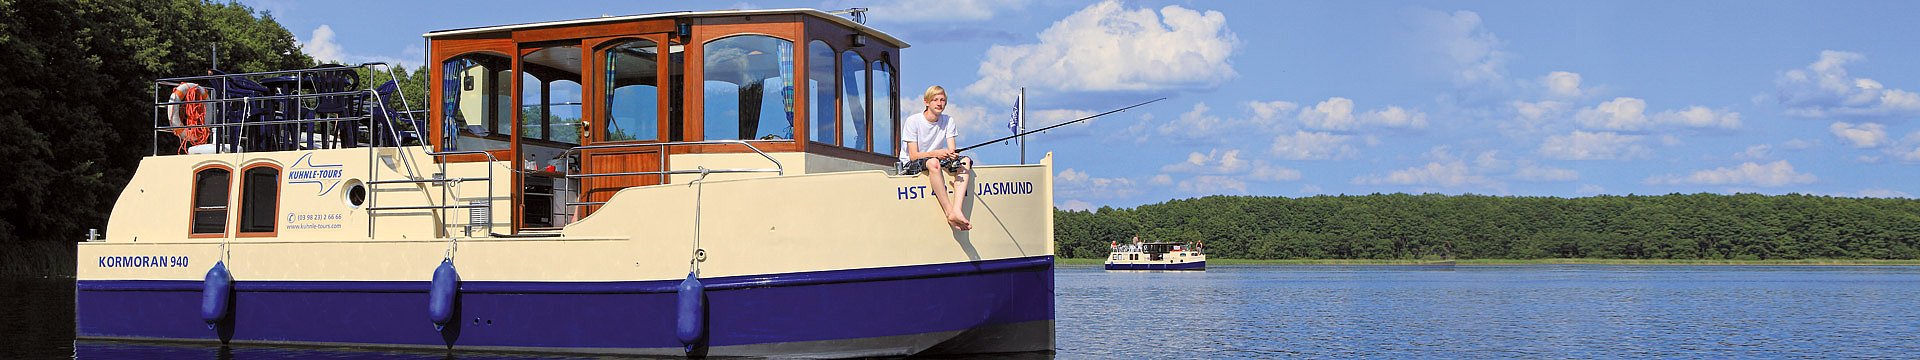 Ein Hausboot, Marke Kormoran, ankert auf einem See in der Nähe des Ufers. Ein junger Mann sitzt gemütlich an Deck und angelt.